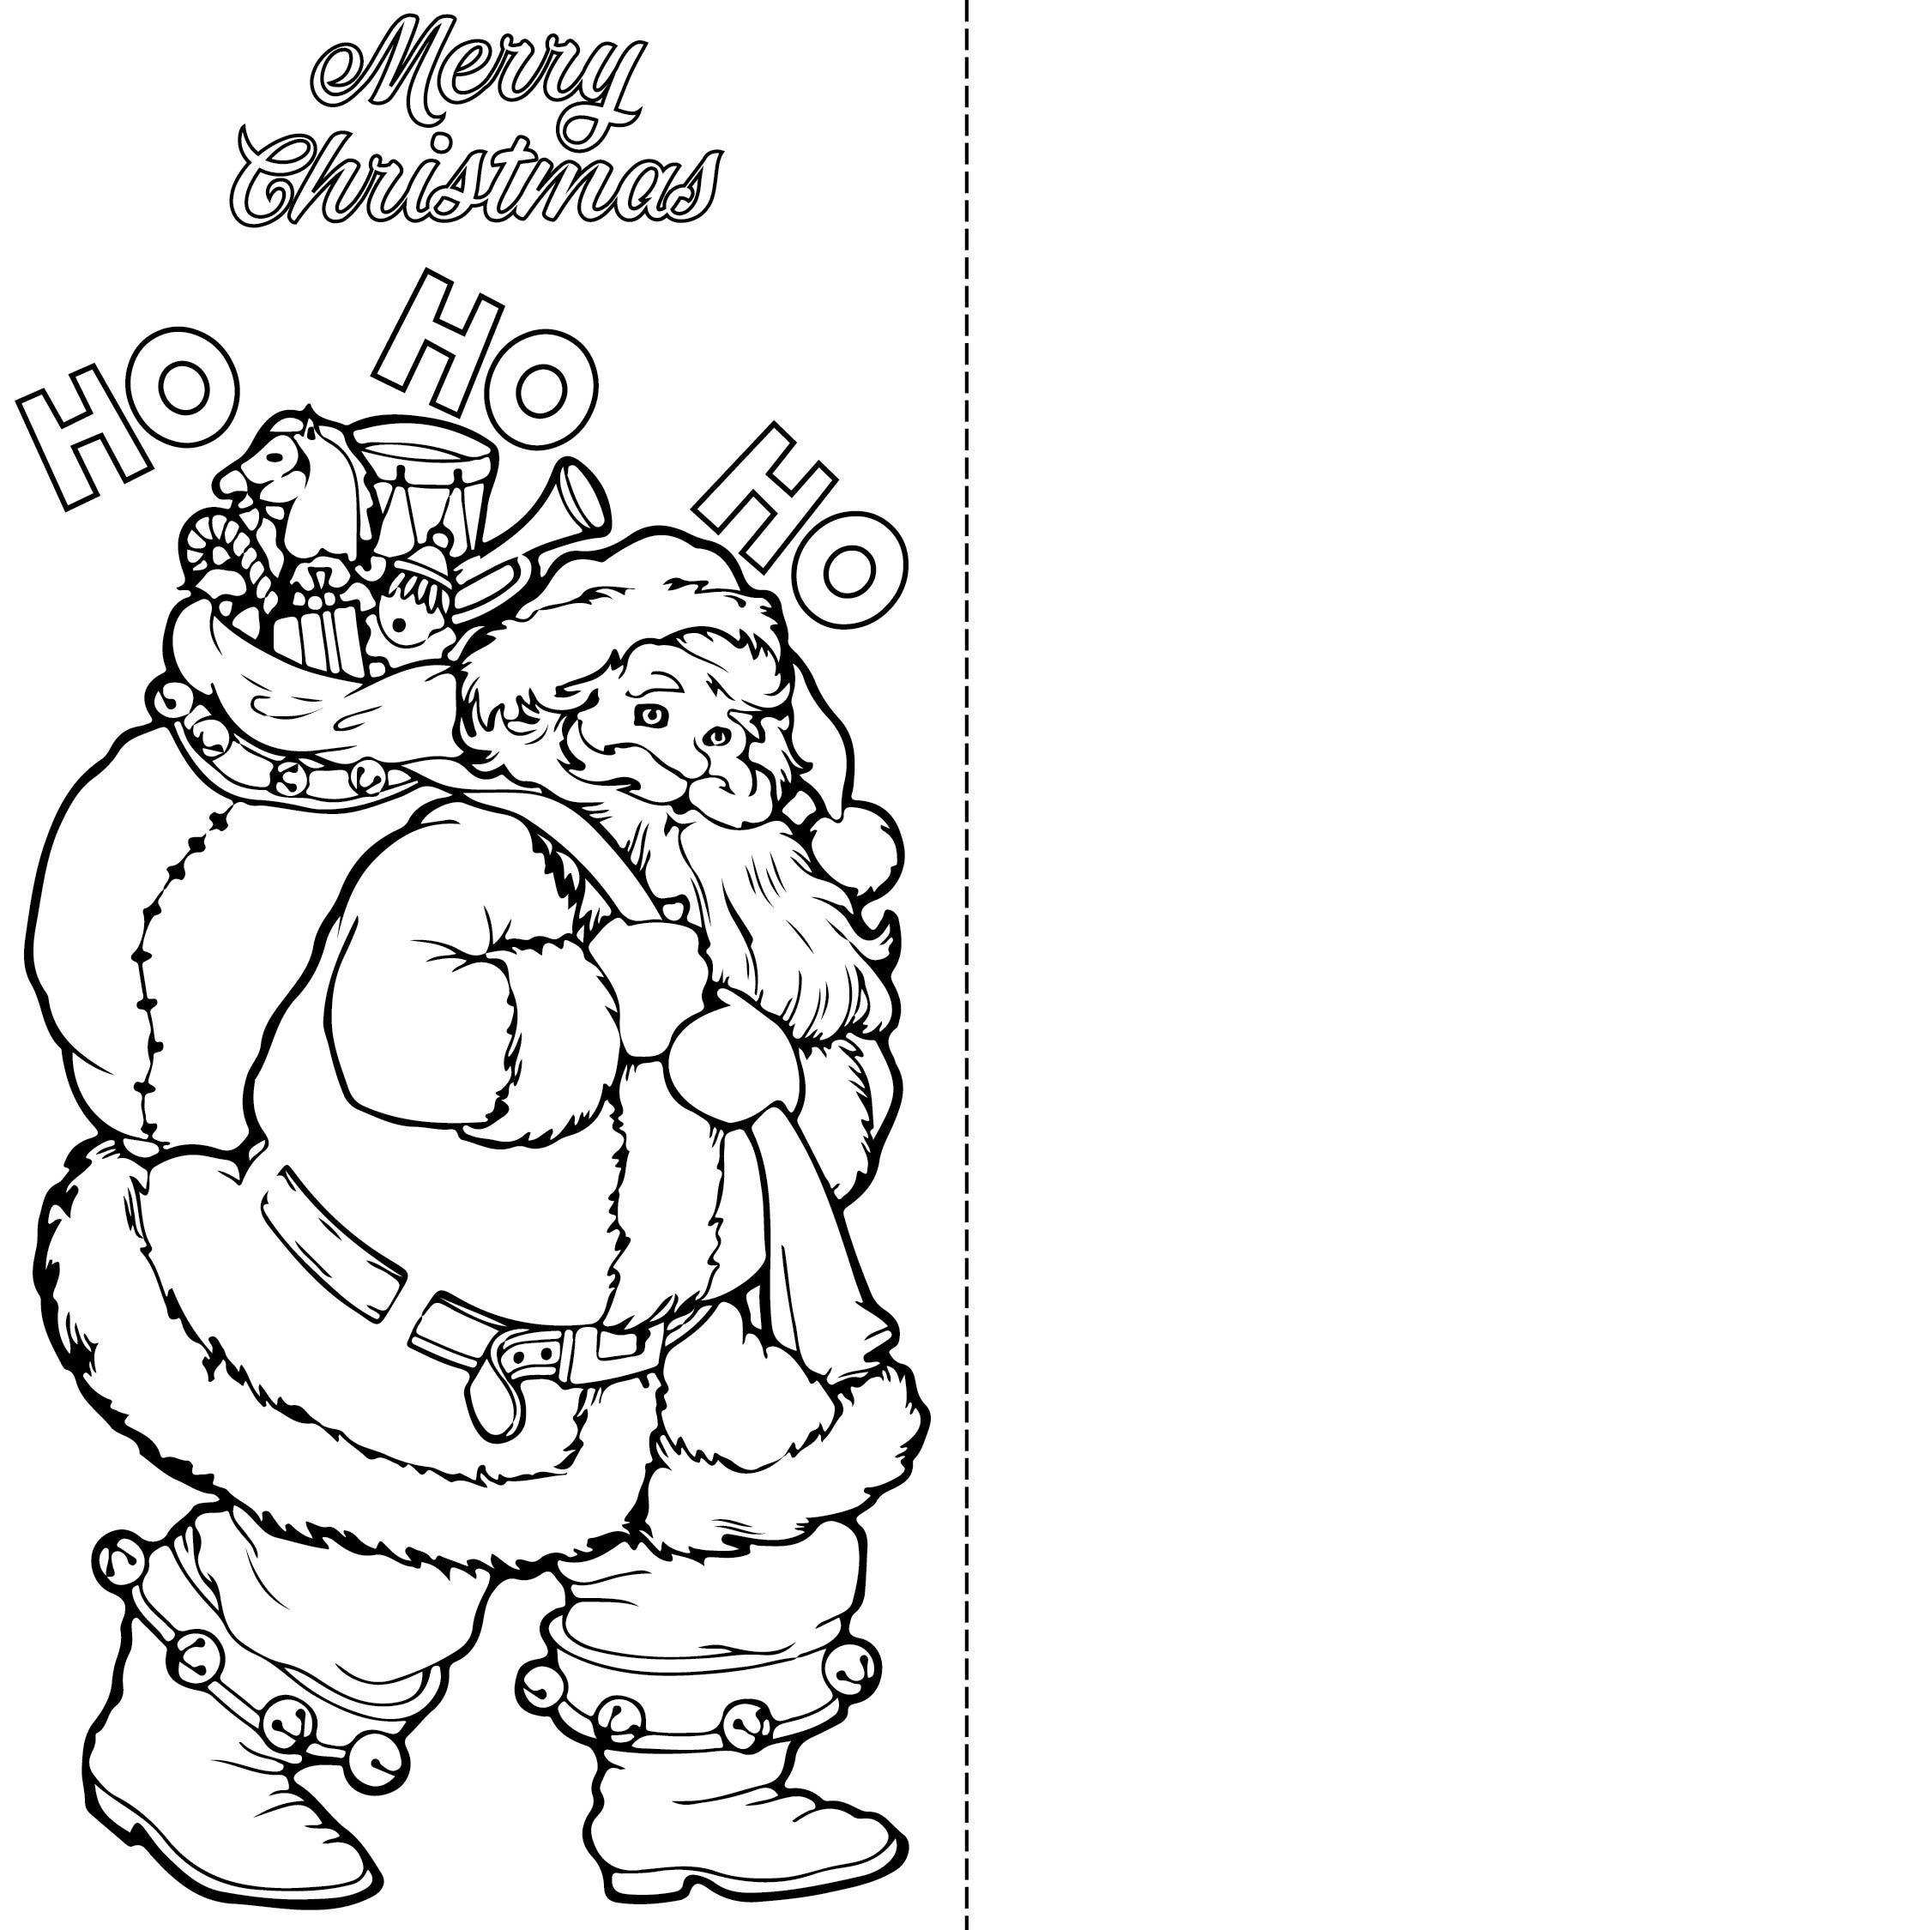 Free Printable Christmas Cards To Color Printable Templates Free